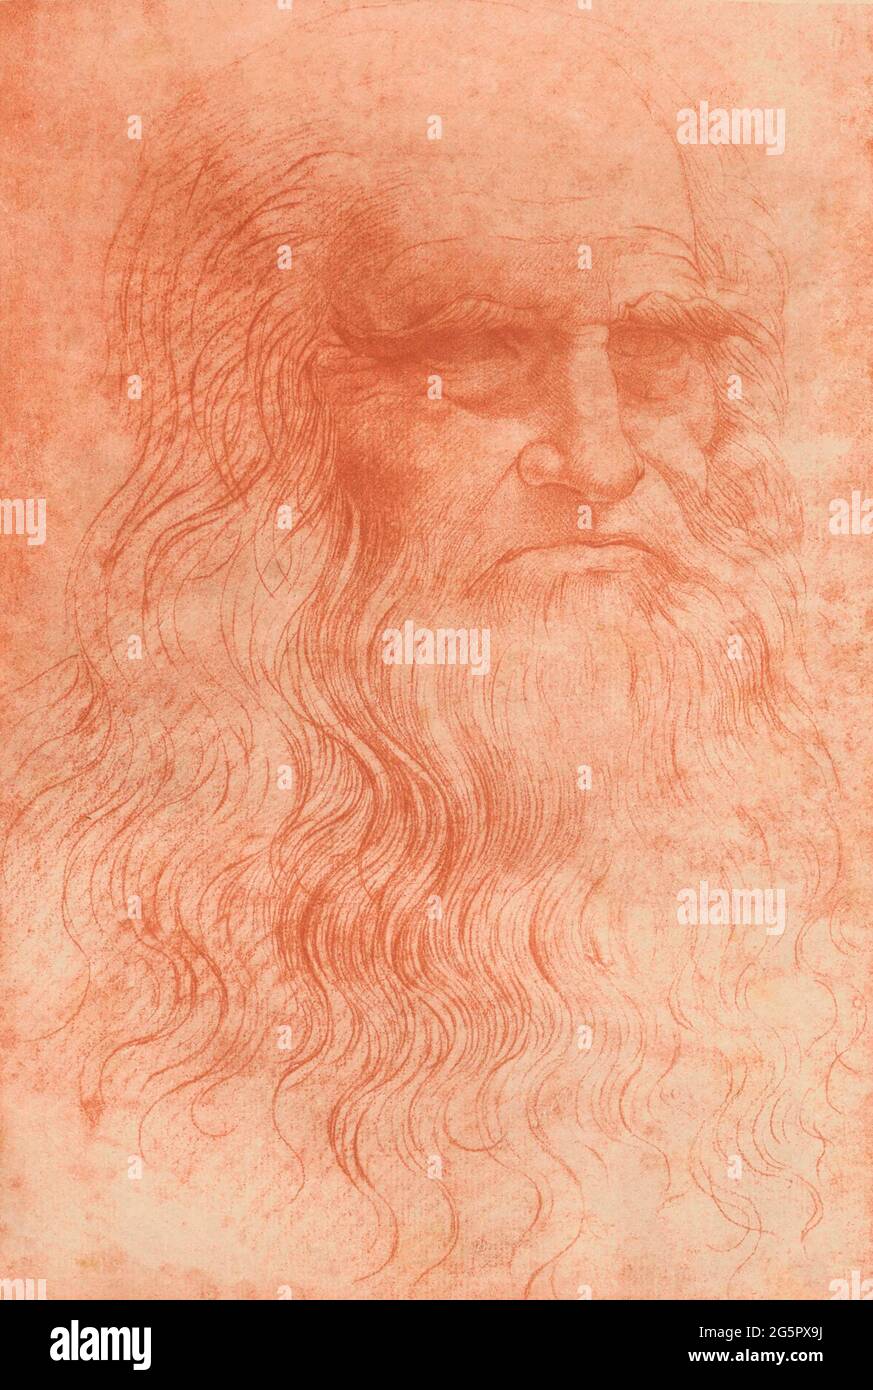 Ritratto di un uomo in gesso rosso, dopo un'opera di Leonardo da Vinci. Si pensa che l'immagine possa essere un autoritratto. Da una copia del fotografo italiano Carlo Naya, 1816 - 1882. Foto Stock